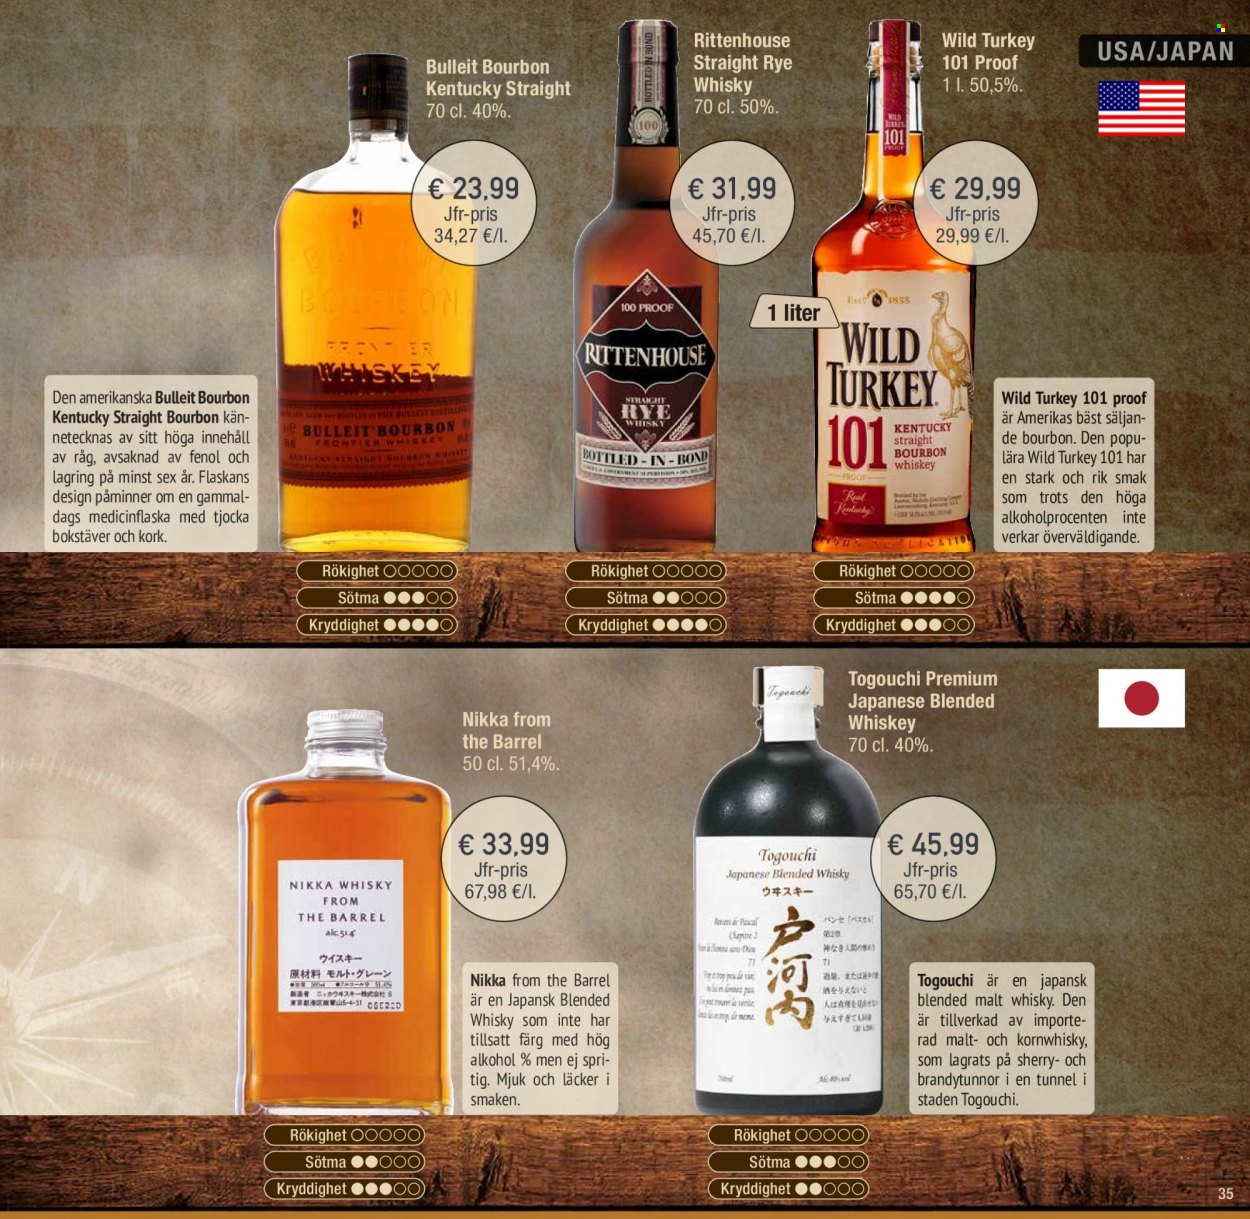 Calle tilbud  - 23.03.2022 - 31.12.2022 - tilbudsprodukter - bourbon, sherry, whisky. Side 35.